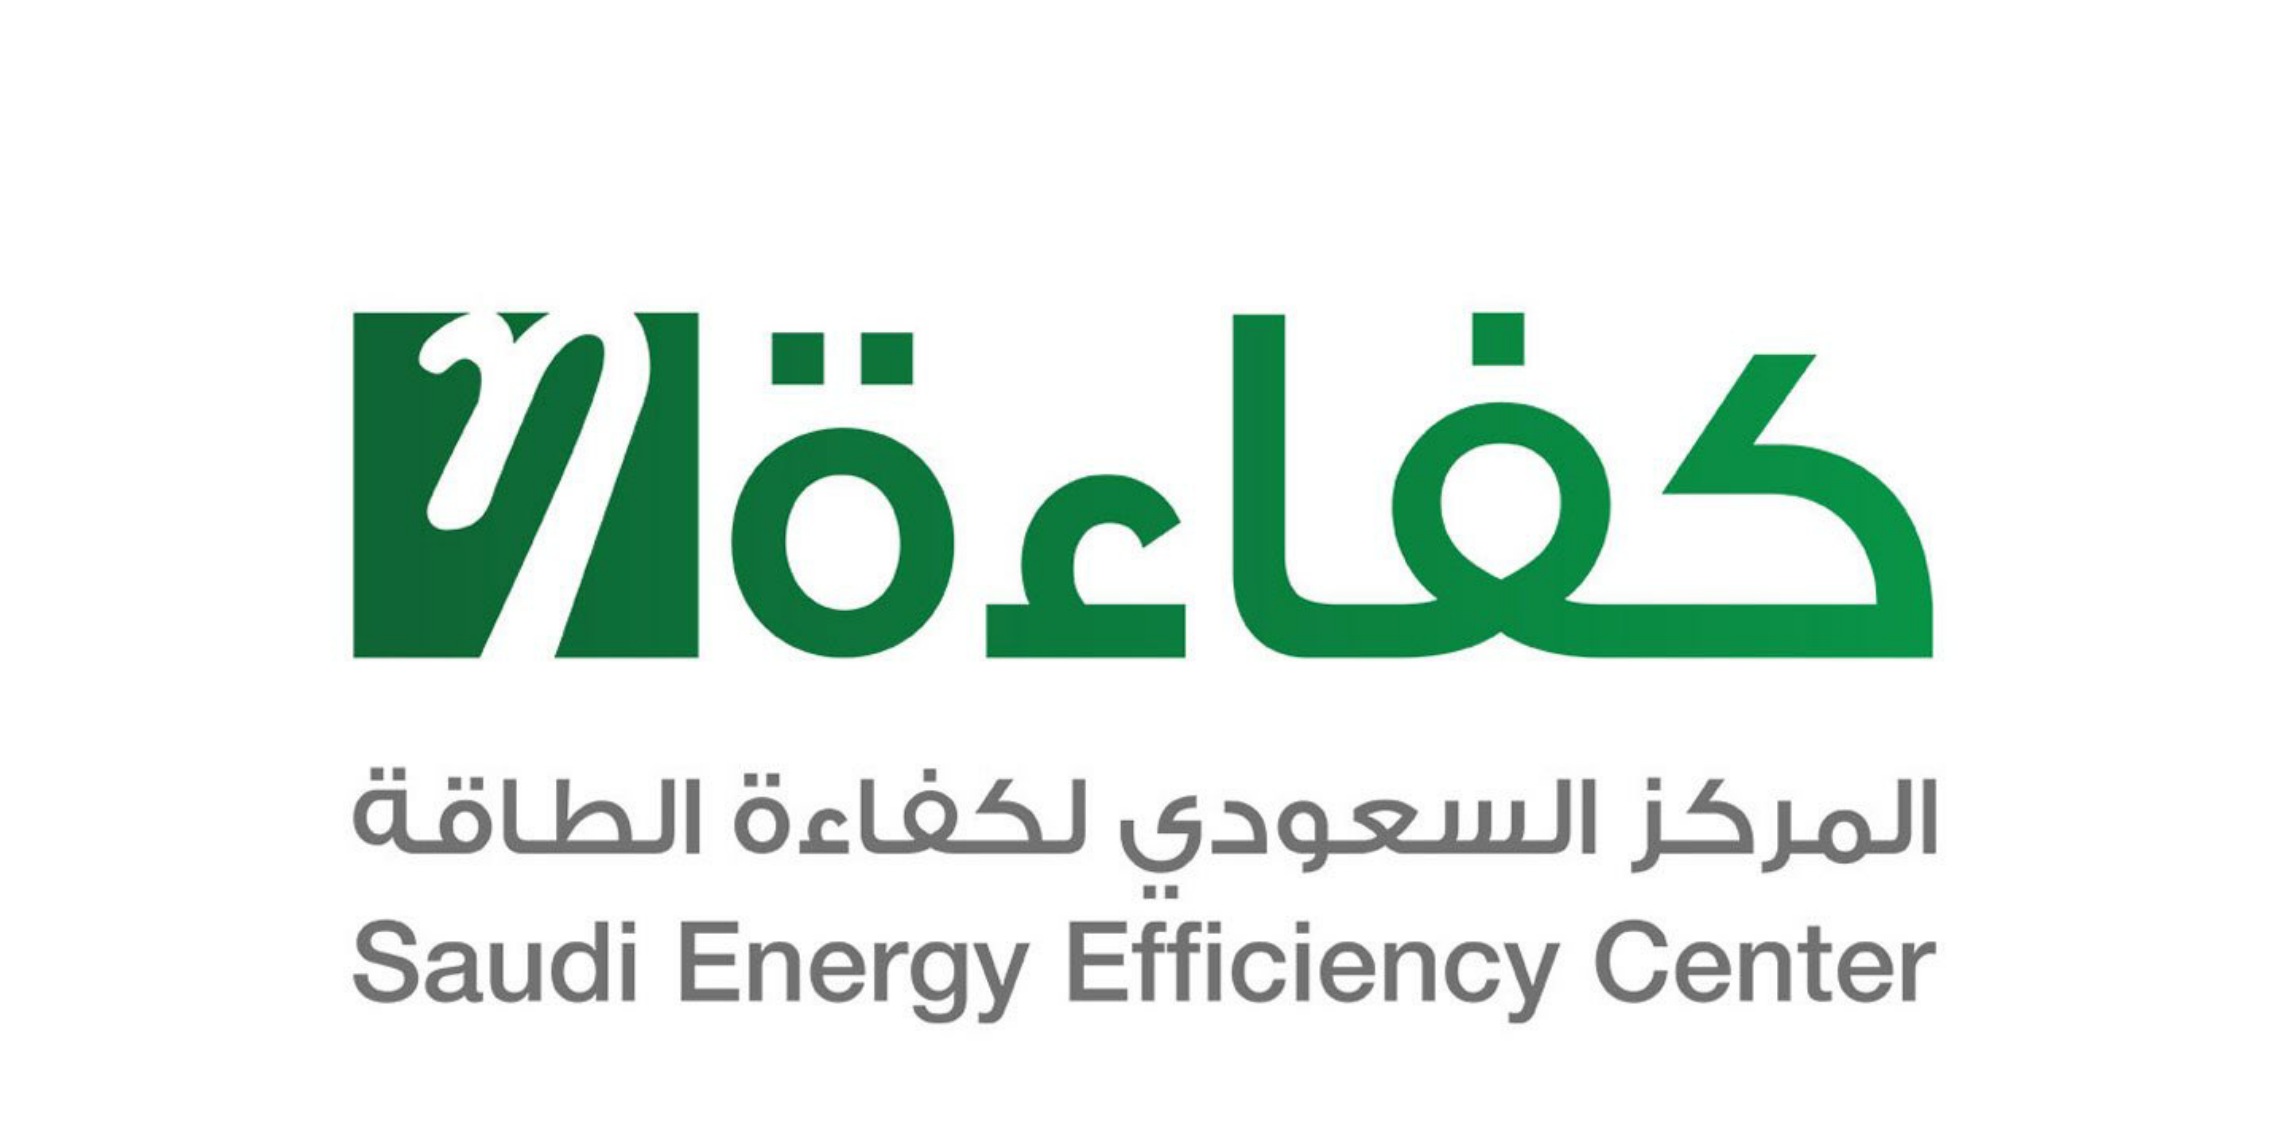 المركز السعودي لكفاءة الطاقة يعلن عن توفر وظائف شاغرة 